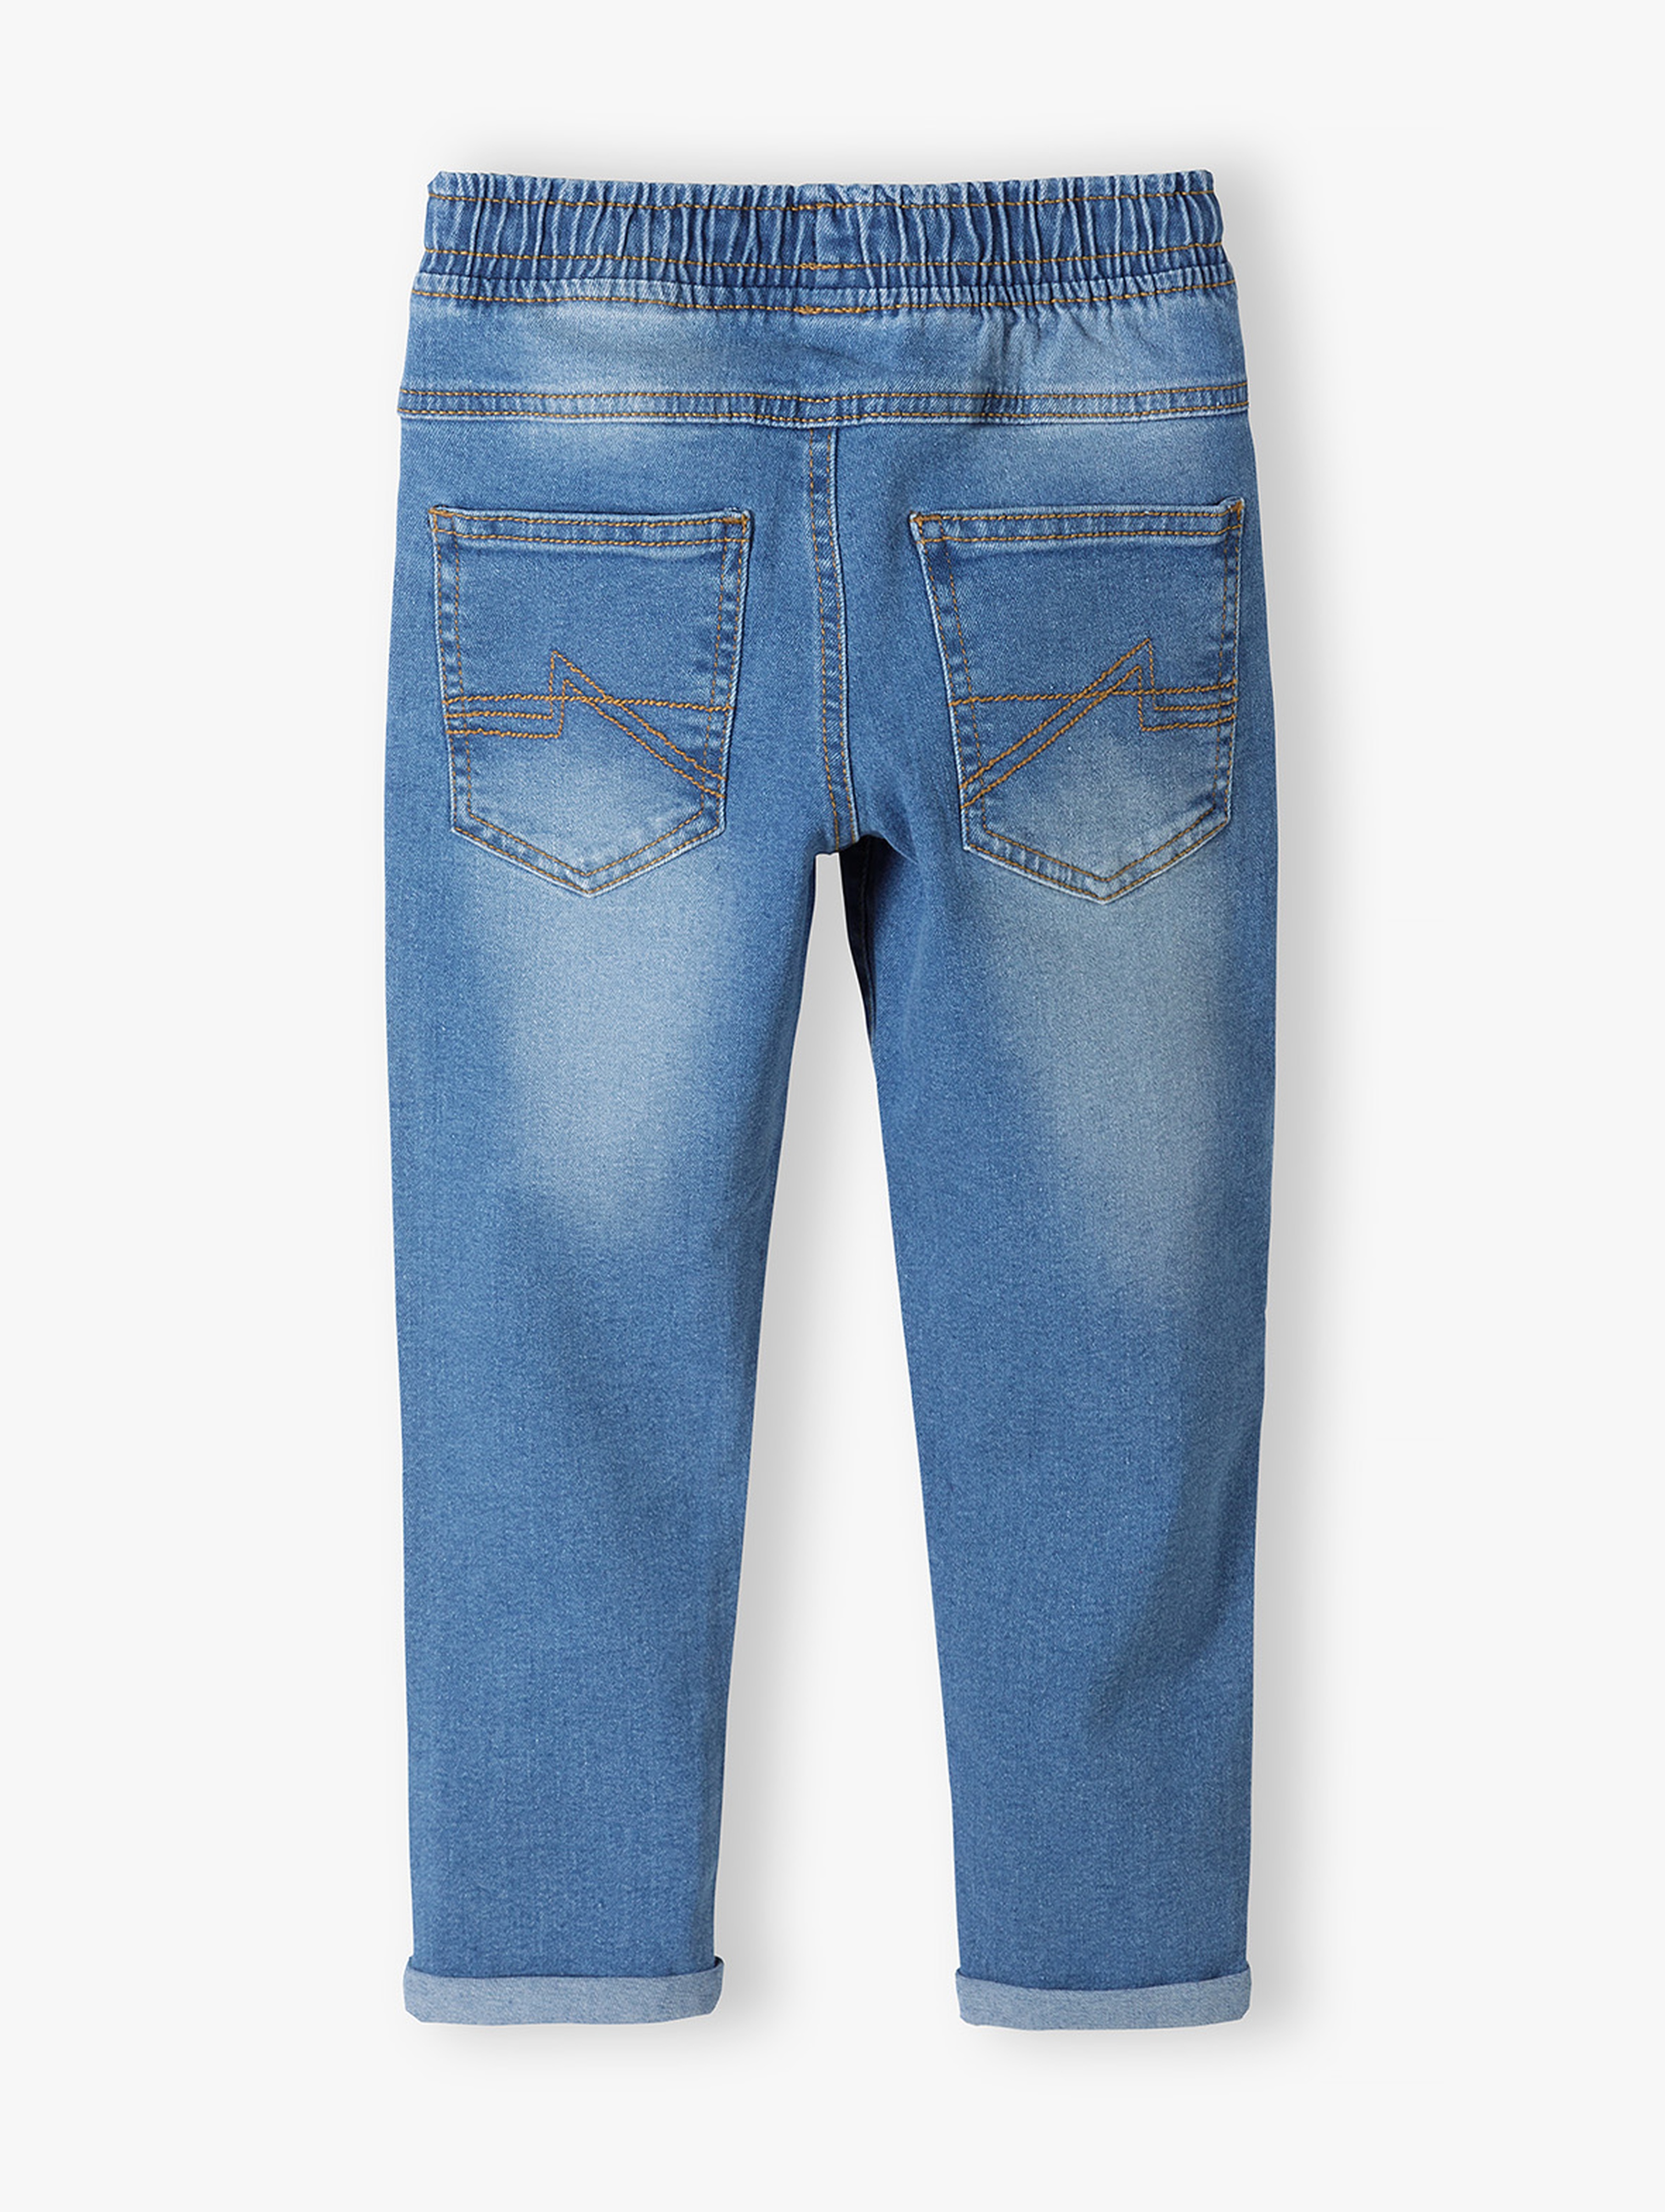 Jasnoniebieskie spodnie jeansowe chłopięce regular